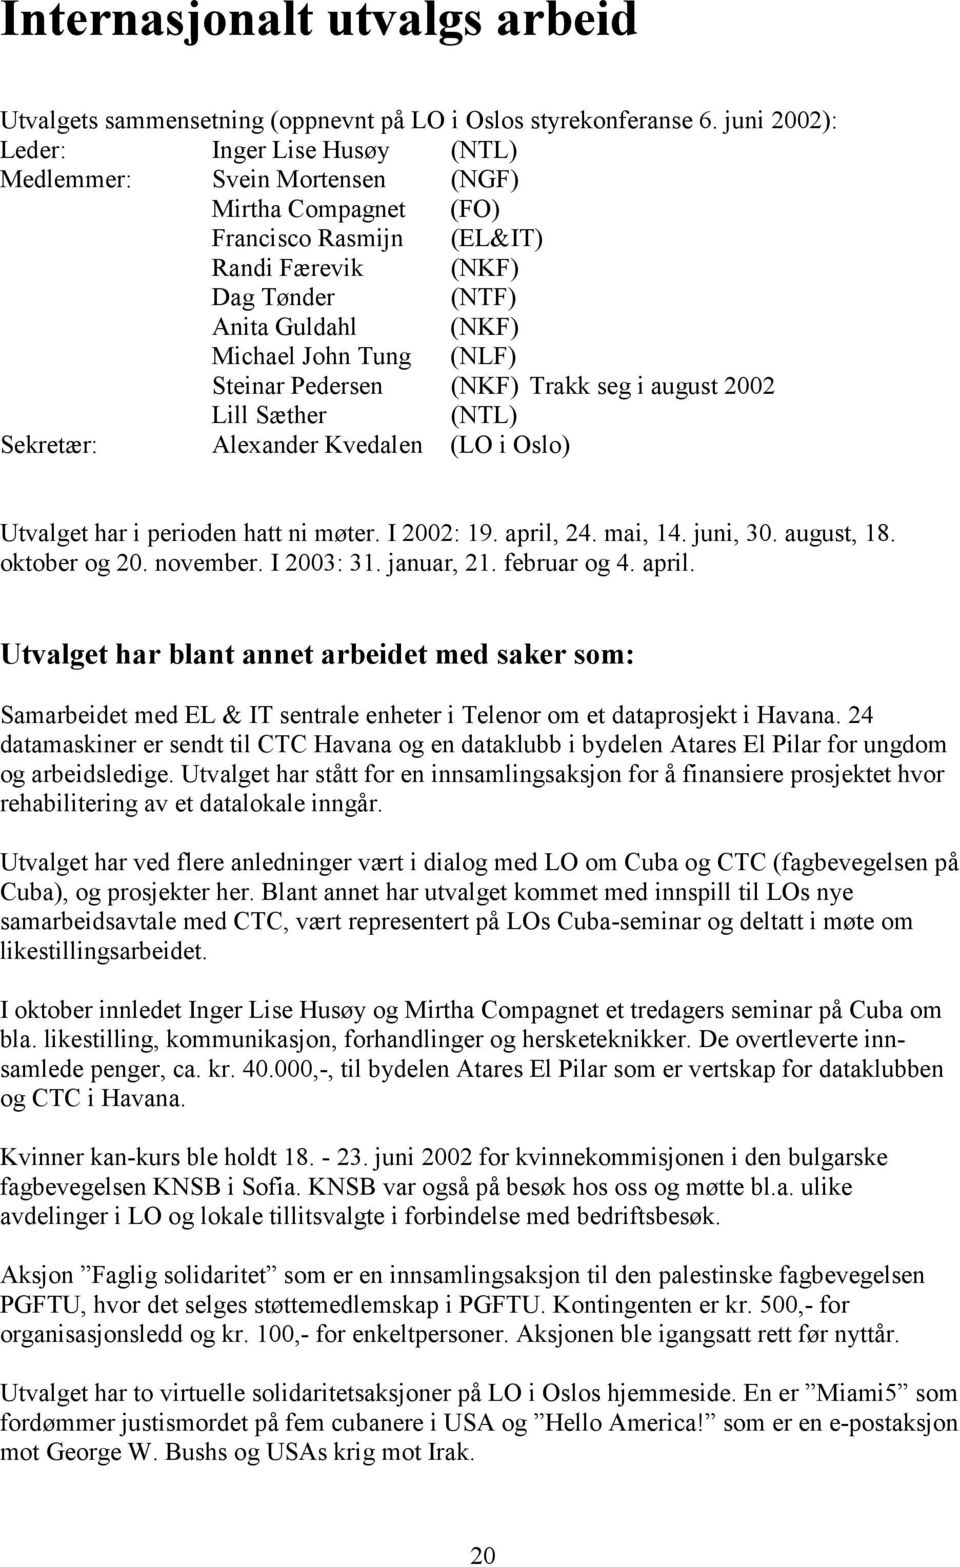 (NLF) Steinar Pedersen (NKF) Trakk seg i august 2002 Lill Sæther (NTL) Sekretær: Alexander Kvedalen (LO i Oslo) Utvalget har i perioden hatt ni møter. I 2002: 19. april, 24. mai, 14. juni, 30.